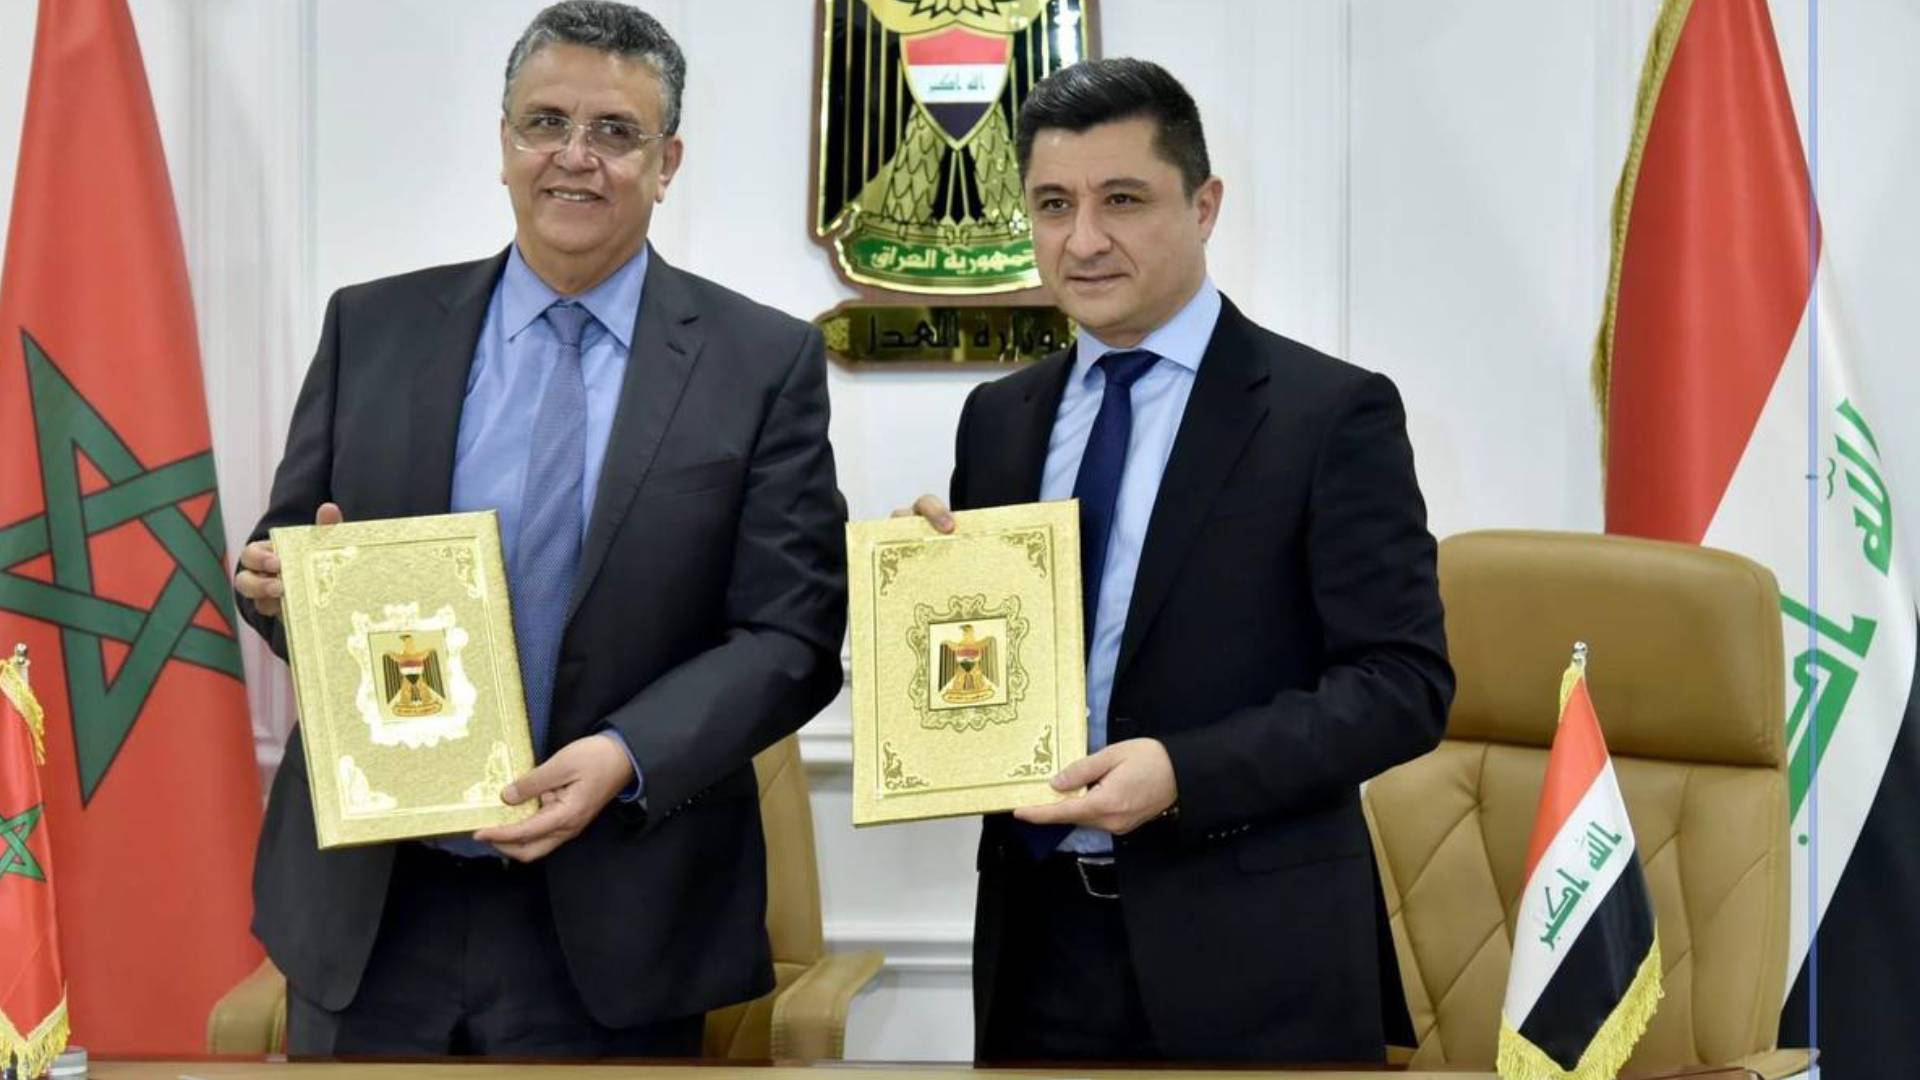 وزارة العدل العراقية توقع بروتوكولتفاهم مع وزارة العدل المغربية